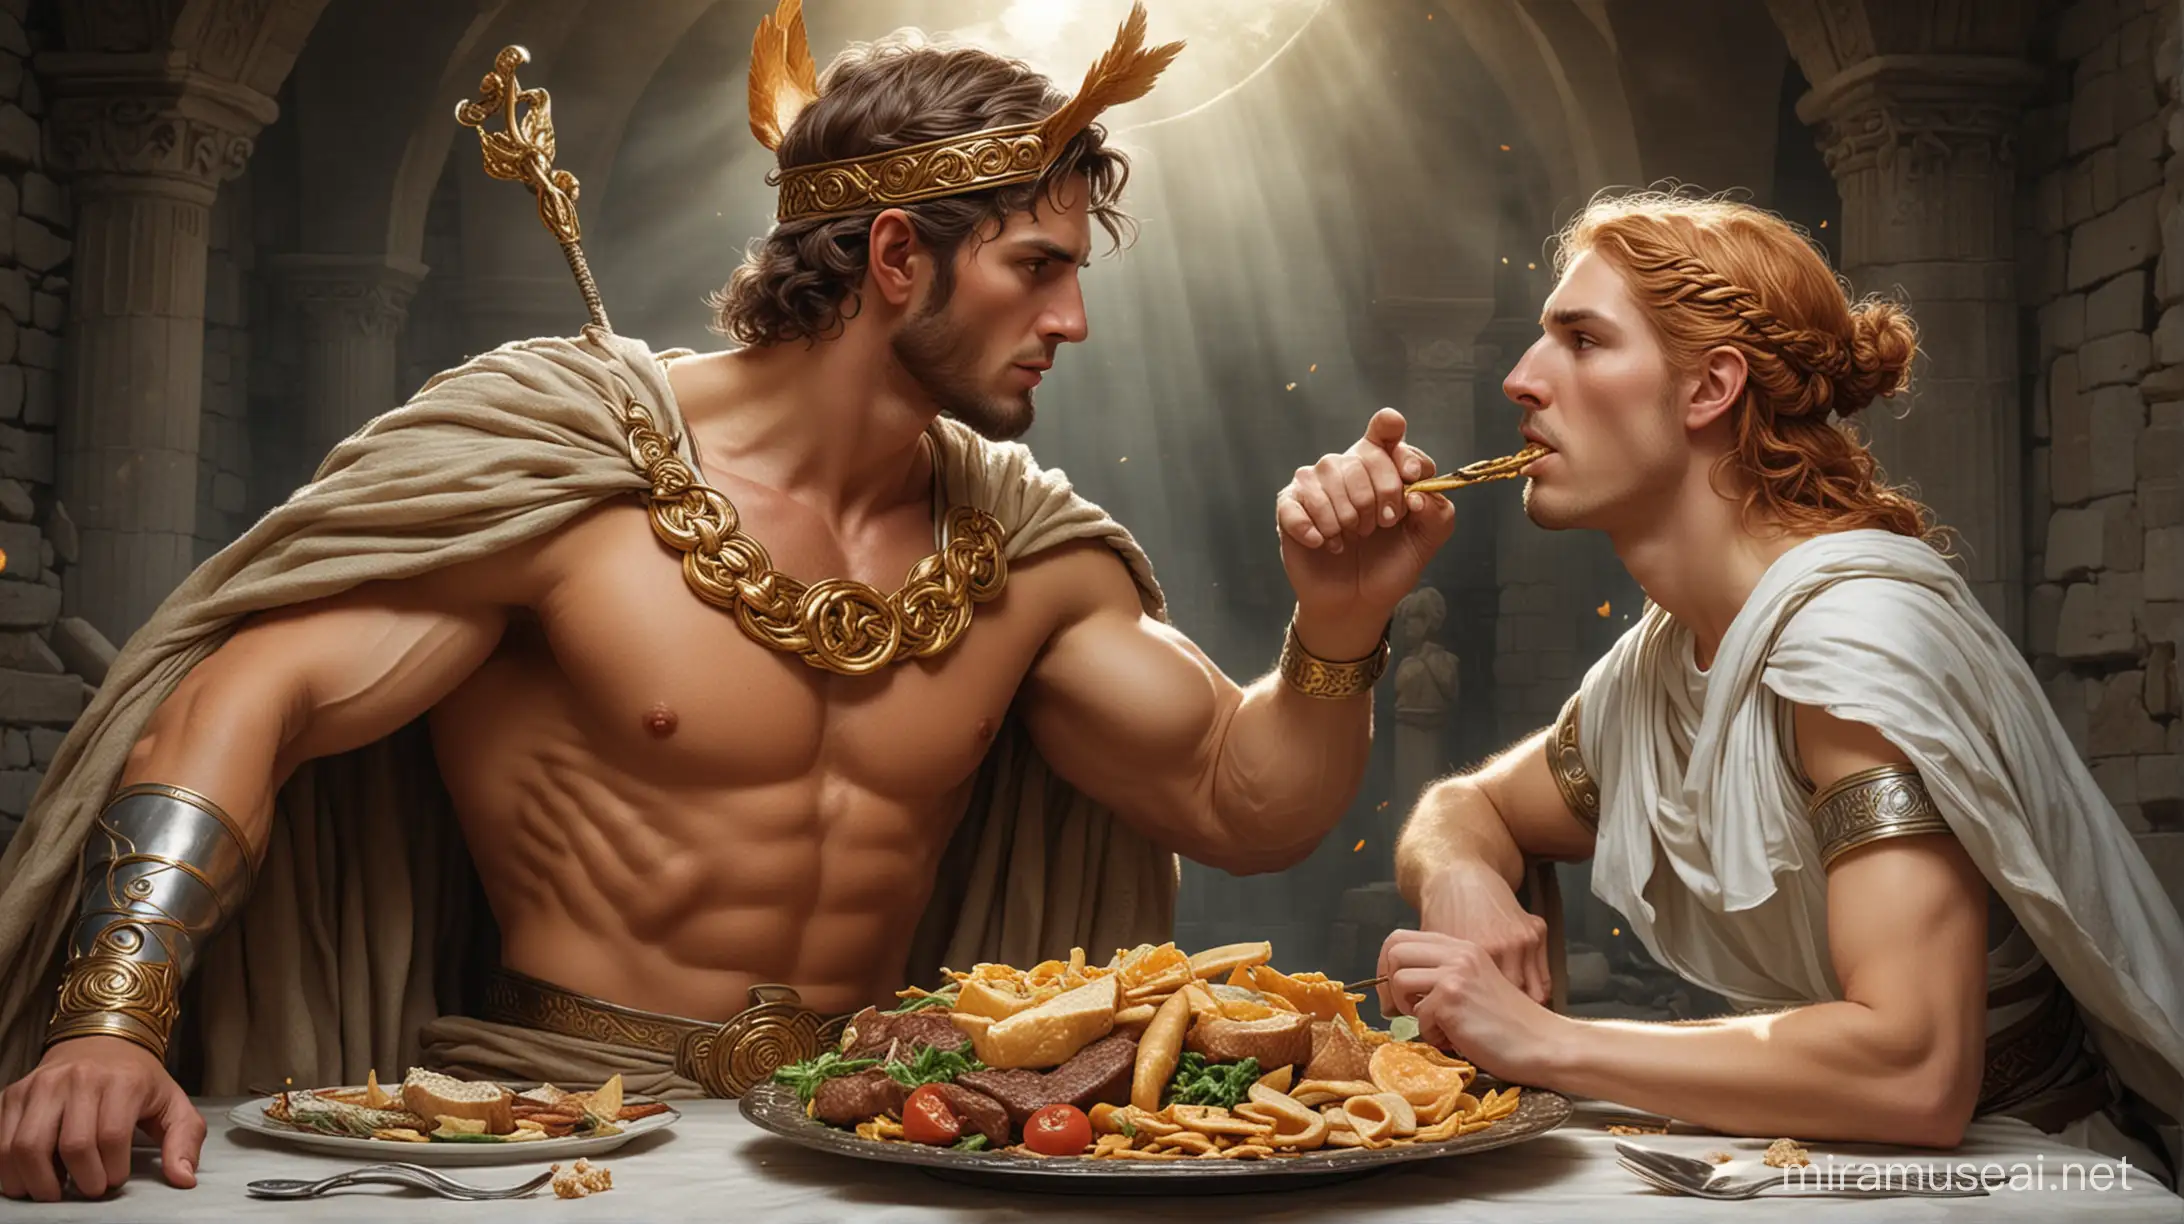  Hermes (Greek god) and Lugh (Celt god) eating together